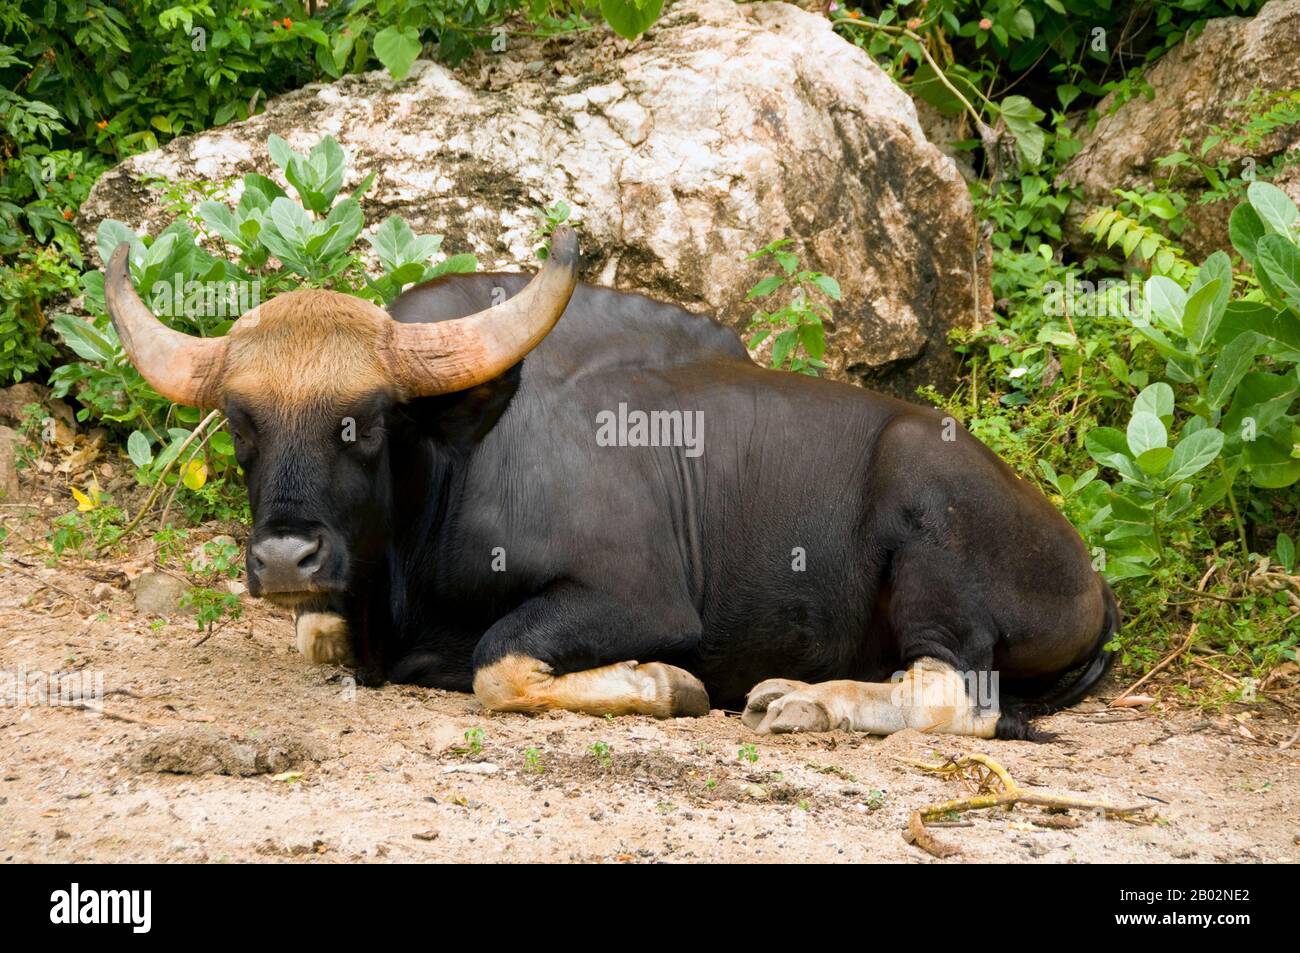 Das Gaur (Bos gaurus), auch indianisches Bison genannt, ist das größte Extant von Rindern und ist in Südasien und Südostasien heimisch. Die Art wird seit 1986 auf der Roten Liste der Weltnaturschutzarten als gefährdet geführt, da der Populationsrückgang in Teilen des Artenstandes in den letzten drei Generationen wahrscheinlich weit über 70 % betragen dürfte. Die Bevölkerungsentwicklung ist in gut geschützten Gebieten stabil und baut sich in einigen Bereichen wieder auf, die vernachlässigt wurden. Der Gaur ist die höchste Art von Wildvieh. Das malayanische Gaur wird Seladang genannt, das birmanische Gaur heißt Pfungel. Stockfoto